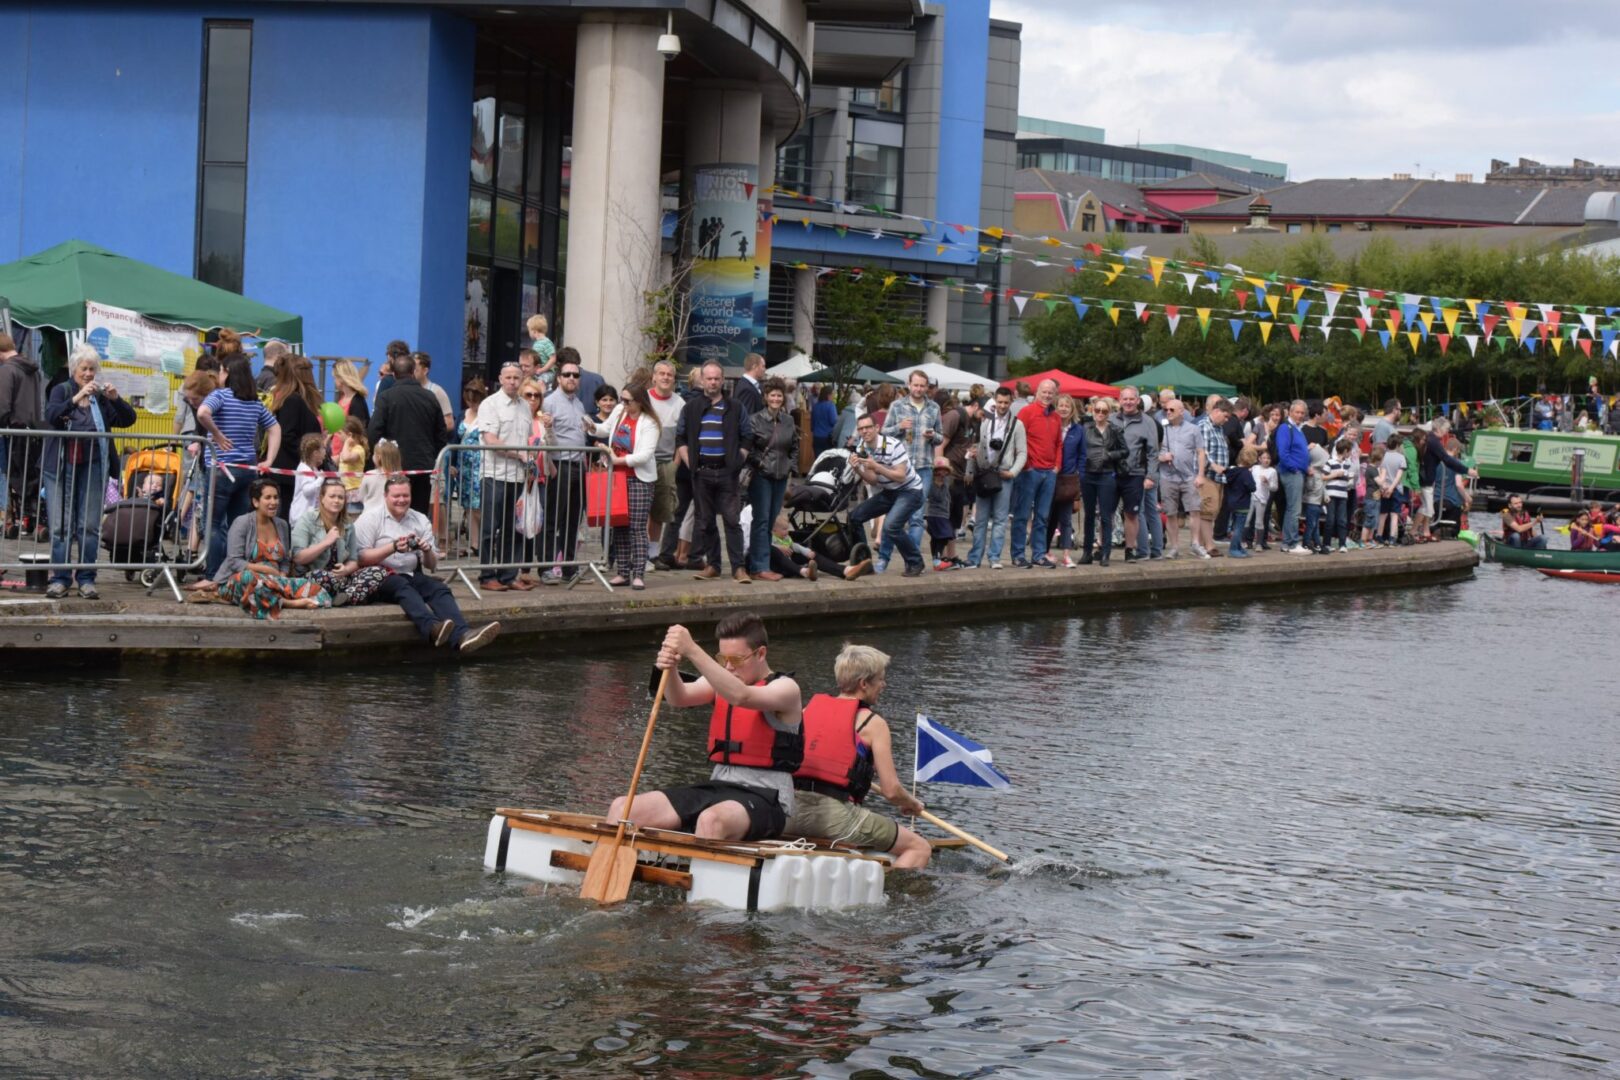 The Edinburgh Canal Festival